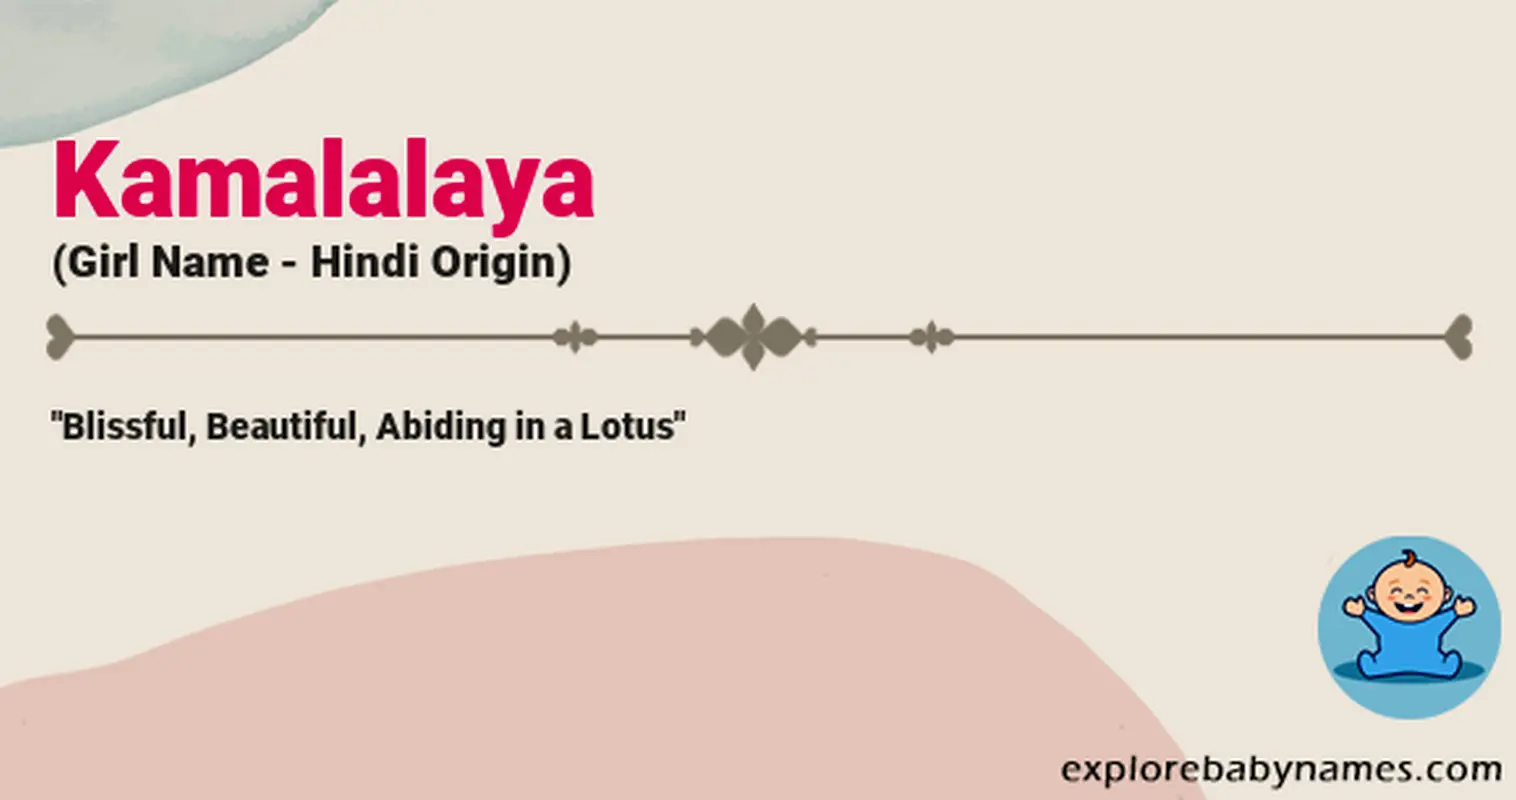 Meaning of Kamalalaya